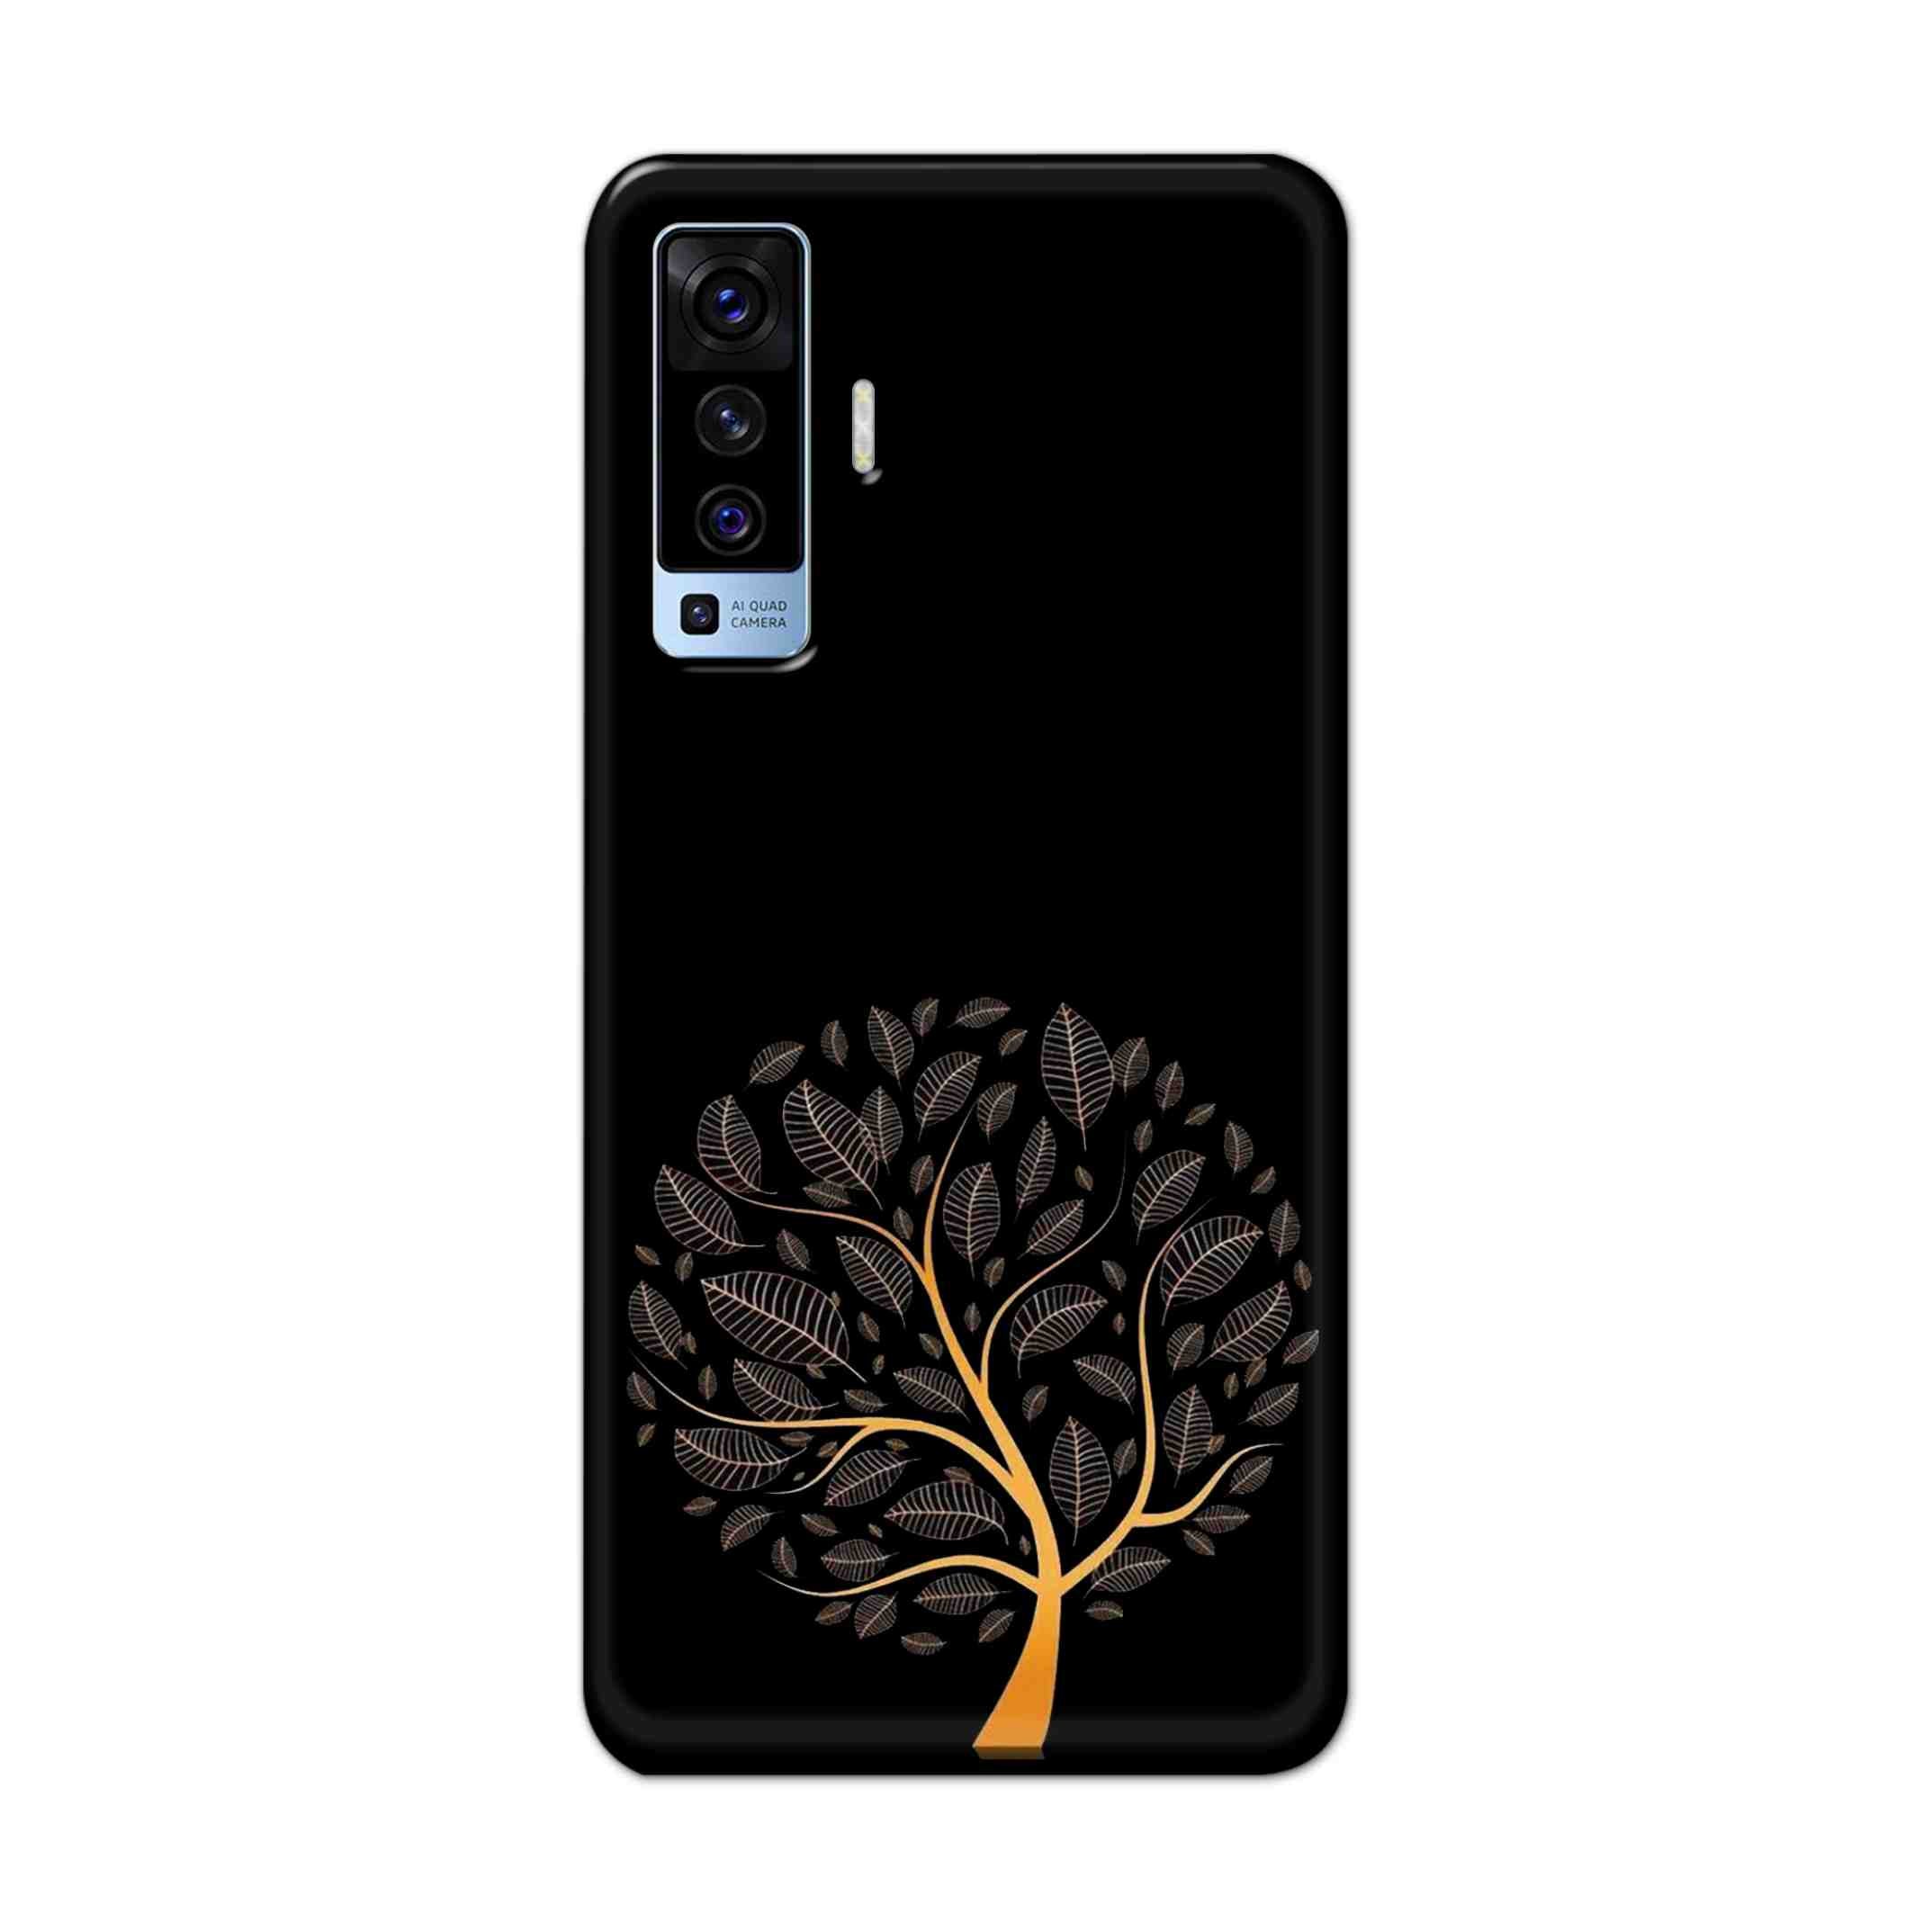 Buy Golden Tree Hard Back Mobile Phone Case Cover For Vivo X50 Online